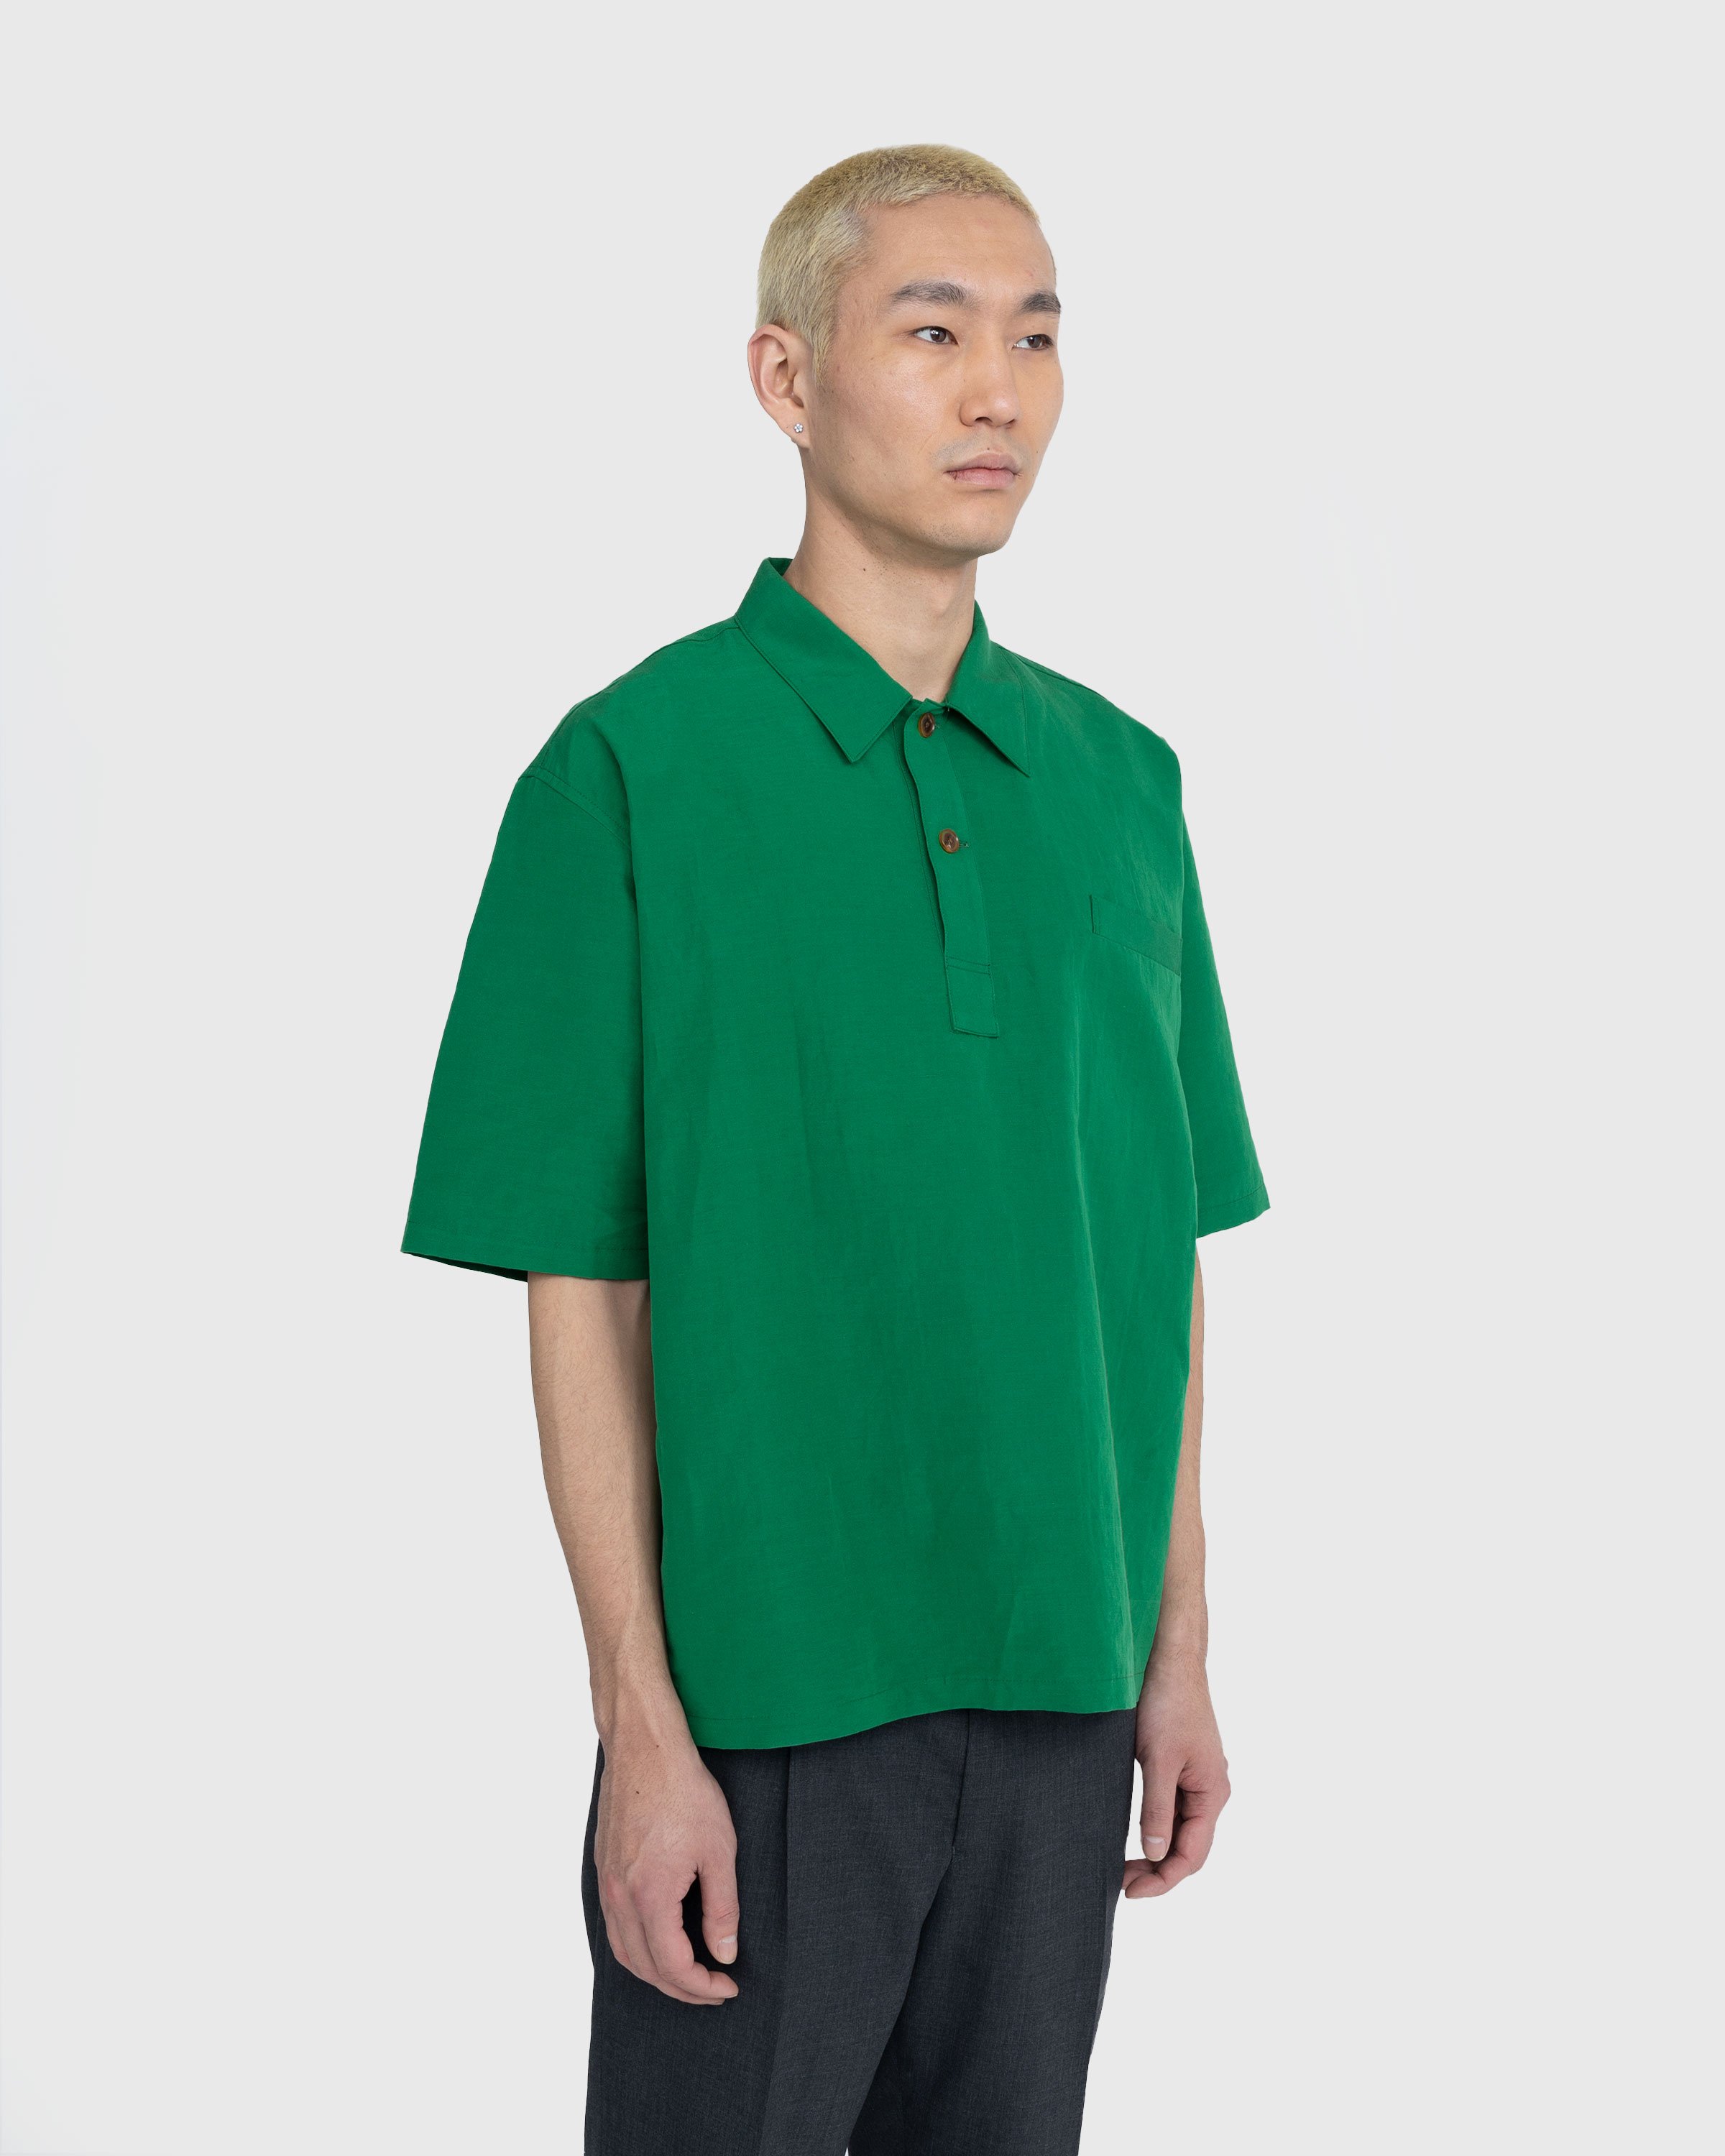 Auralee - High Density Finx Linen Weather Shirt Green - Clothing - Green - Image 4